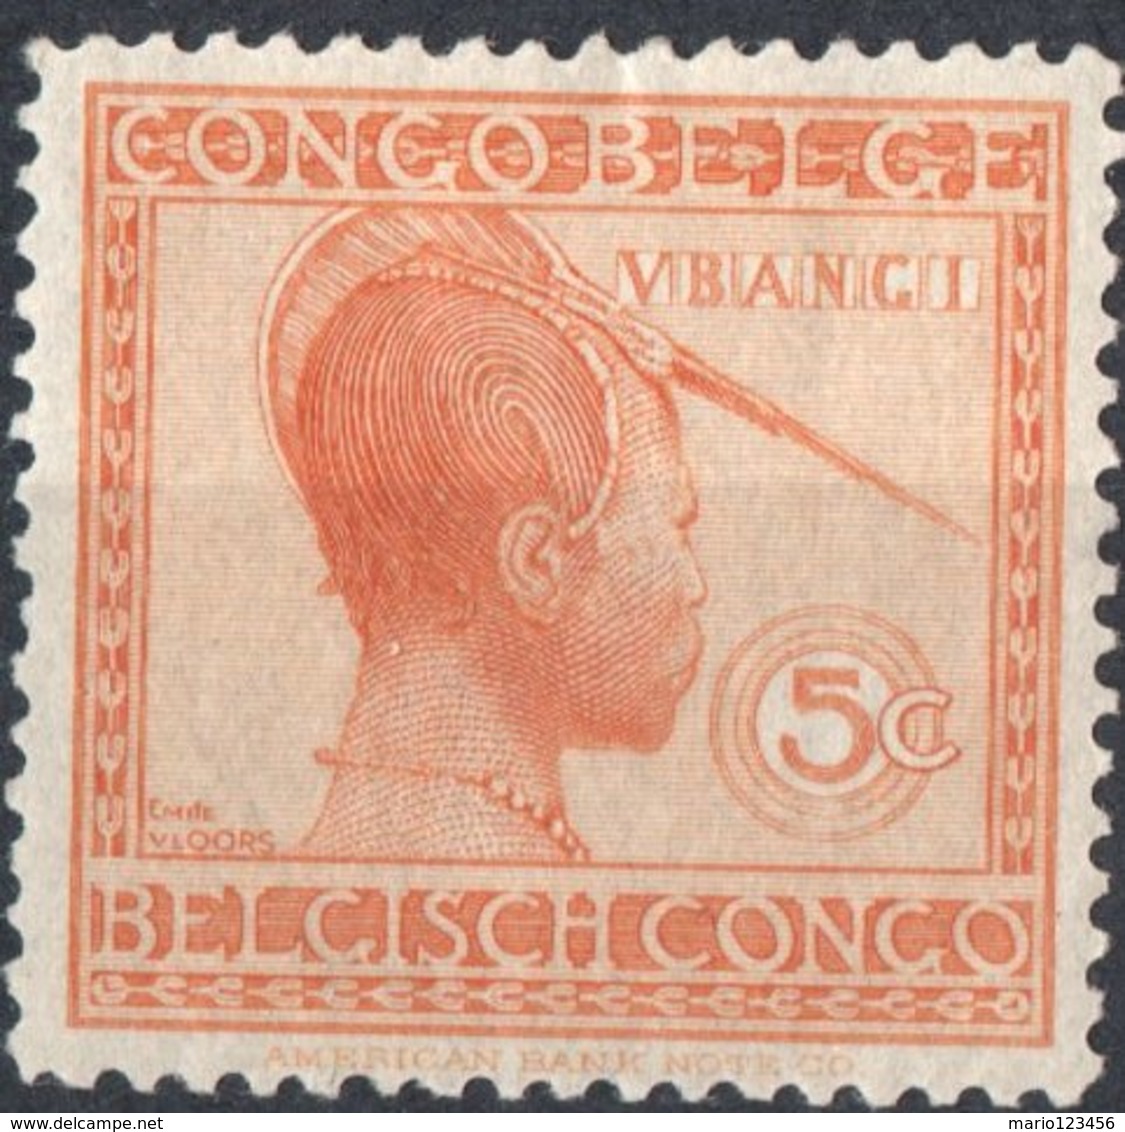 CONGO BELGA, BELGIAN CONGO, COLONIA BELGA, USI E COSTUMI, 1923, FRANCOBOLLO NUOVO (MLH*) Michel 66   Scott 88 - Nuovi